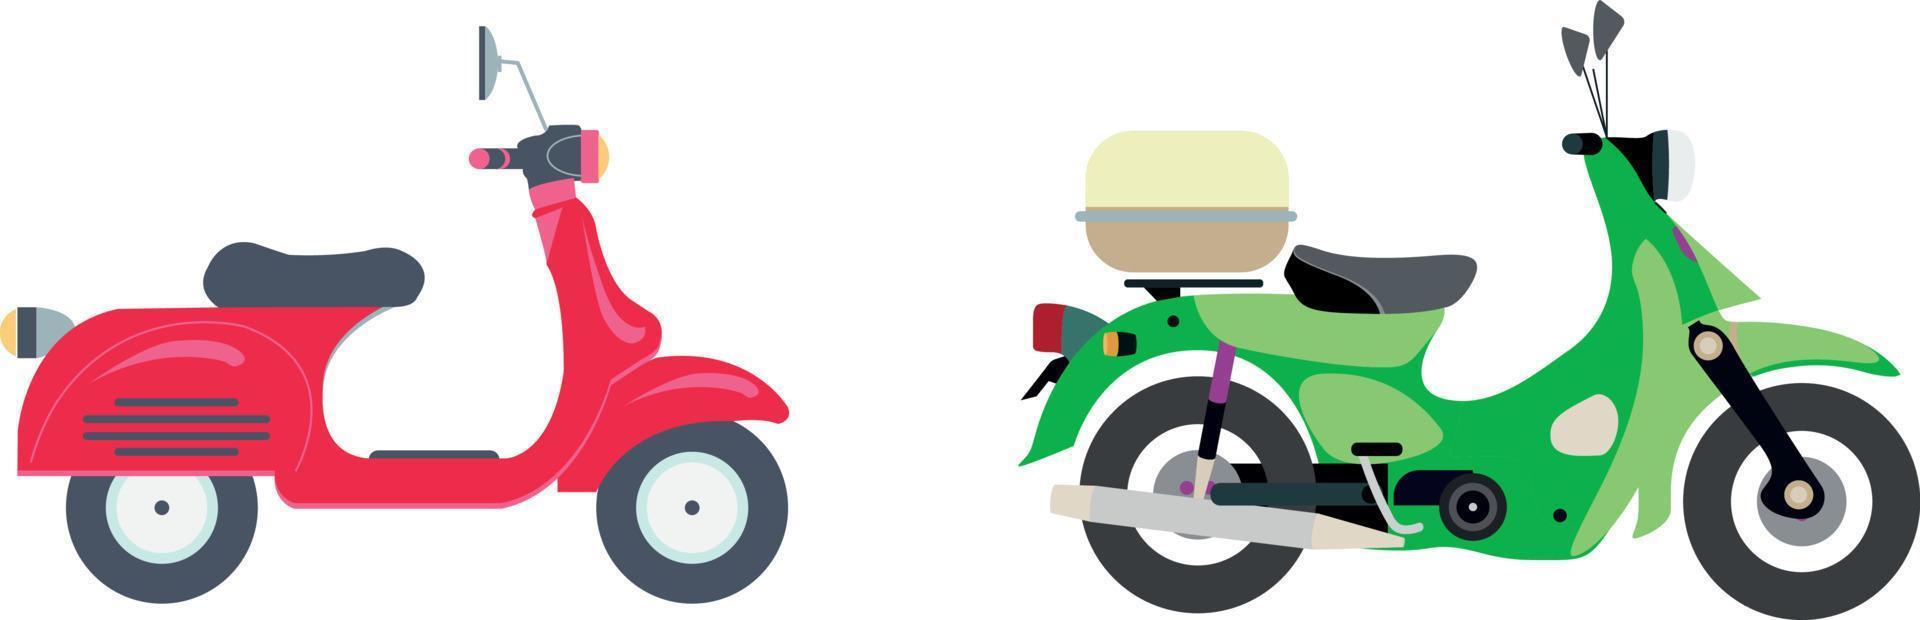 motor set. motorfiets en scooter, fiets en chopper. motorcross en levering retro en moderne voertuigen zijaanzicht vector iconen. illustratie scooter en motorfiets, chopper en sportfiets